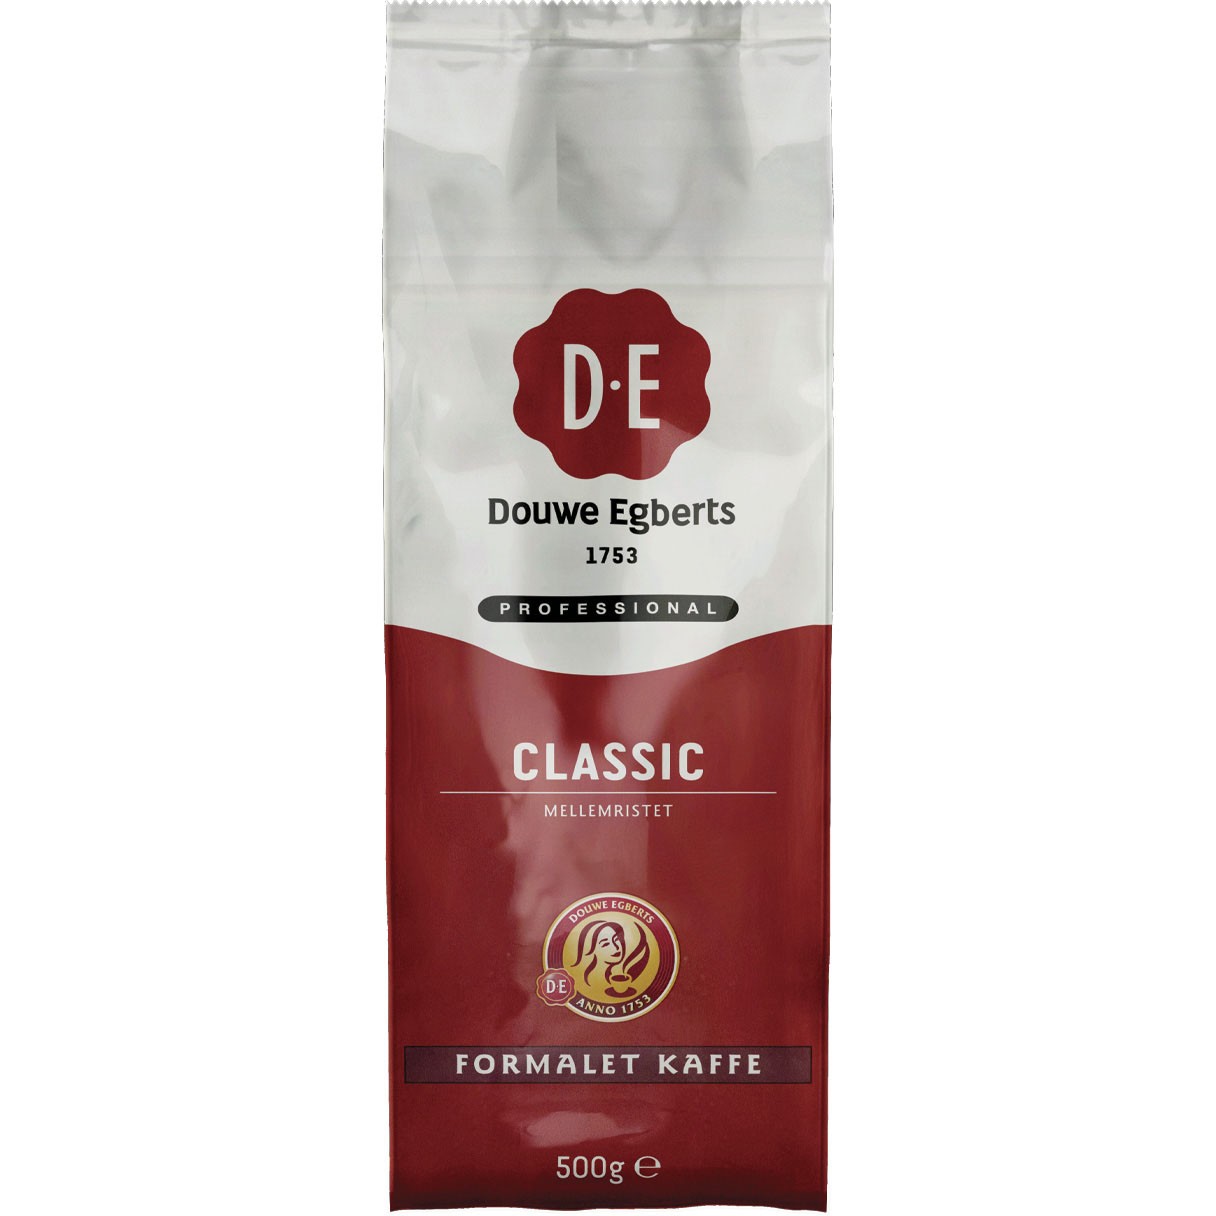 D.E. Classic formalet kaffe 500g